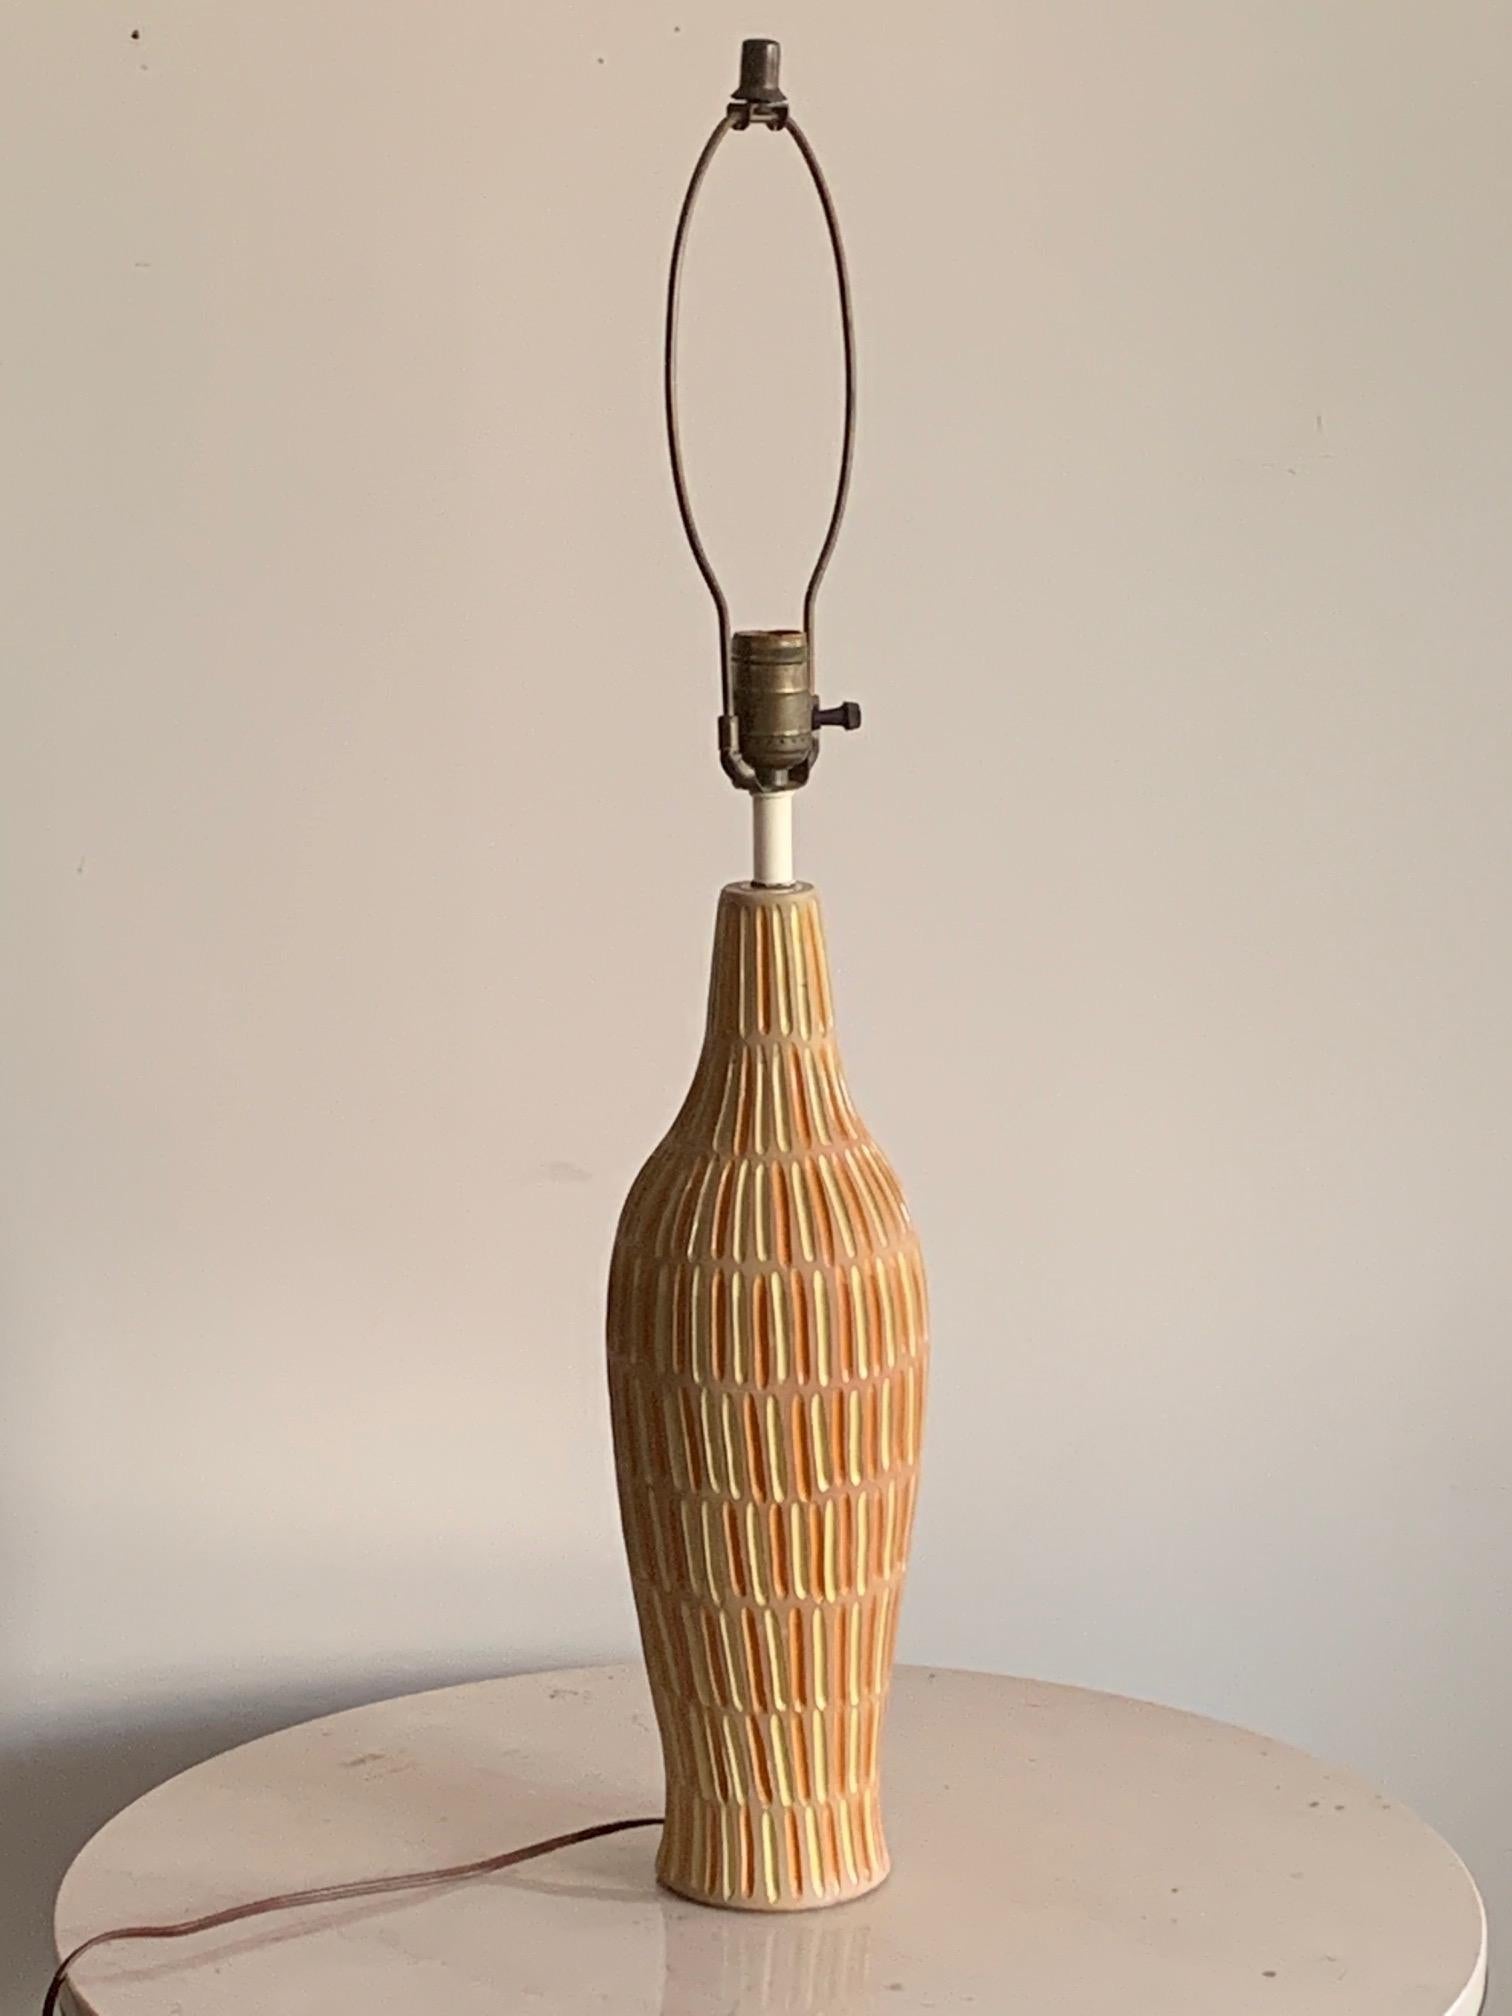 Lampe classique en céramique italienne fabriquée pour Raymor, vers les années 1960. Forme de bouteille intéressante avec des bandes jaunes et orange alternées.